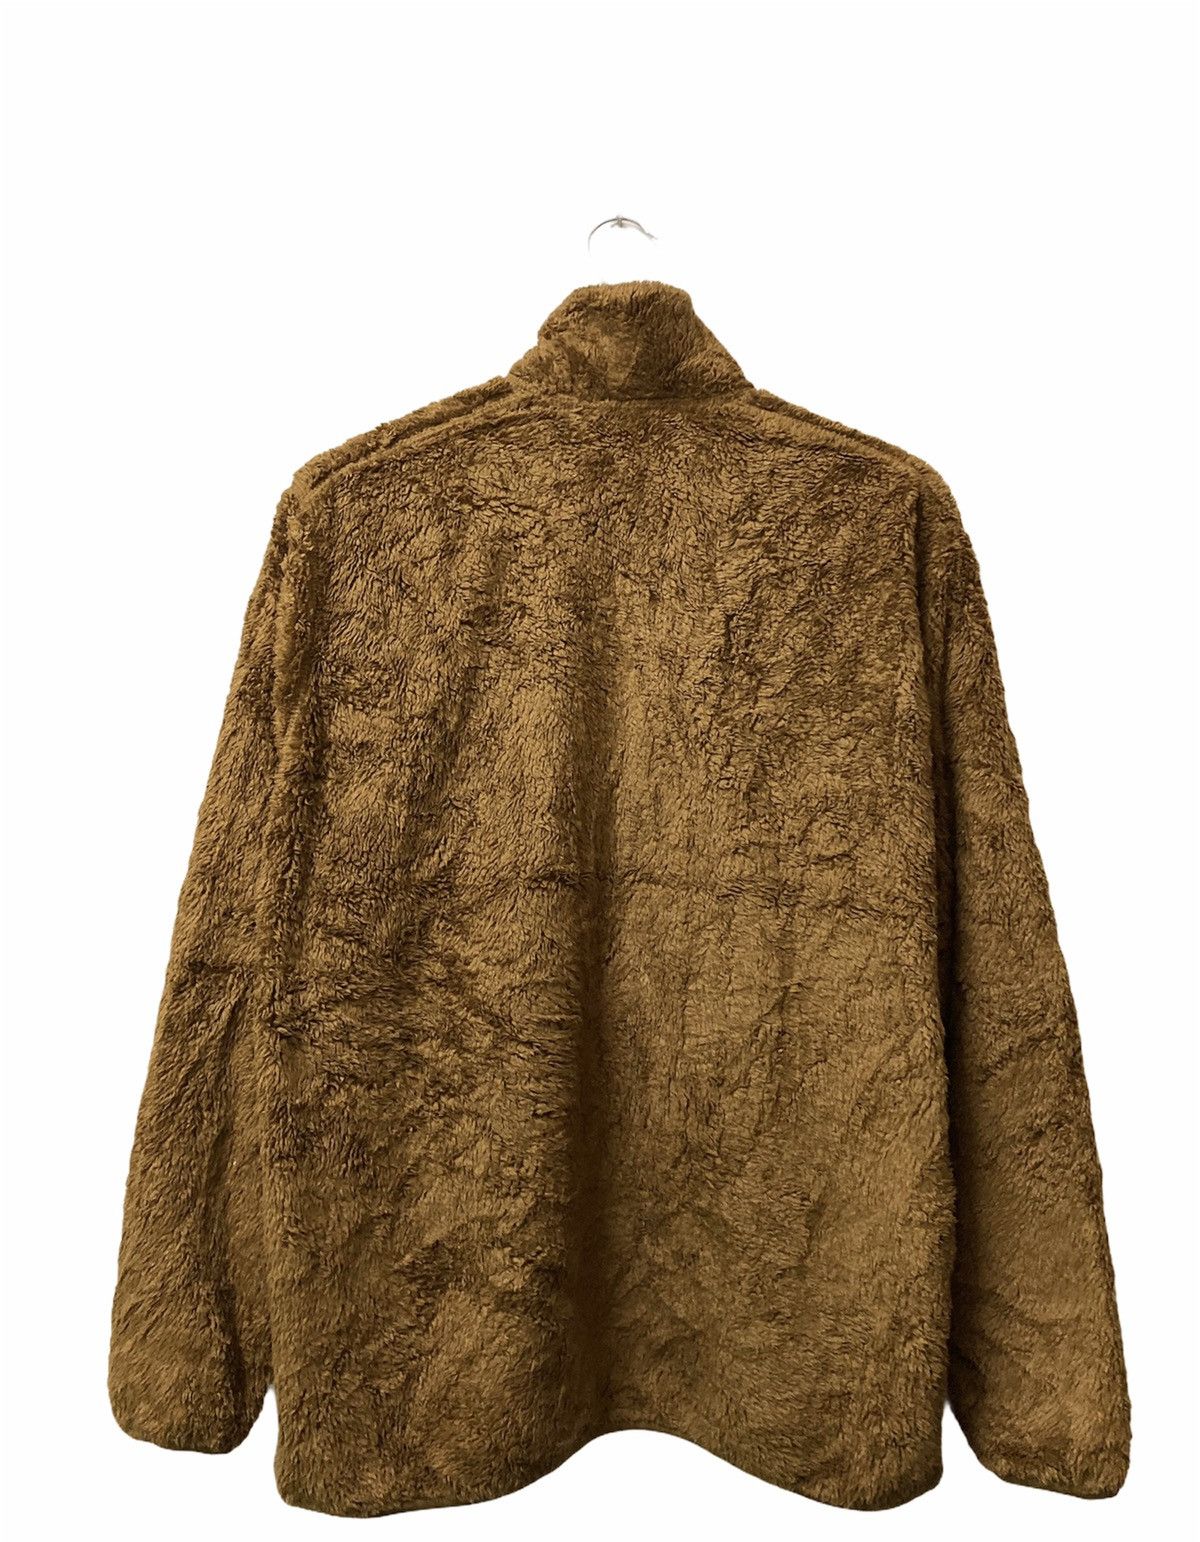 Uniqlo Fluffy Yarn Fleece Full Zipper Long Sleeve Jacket - 2